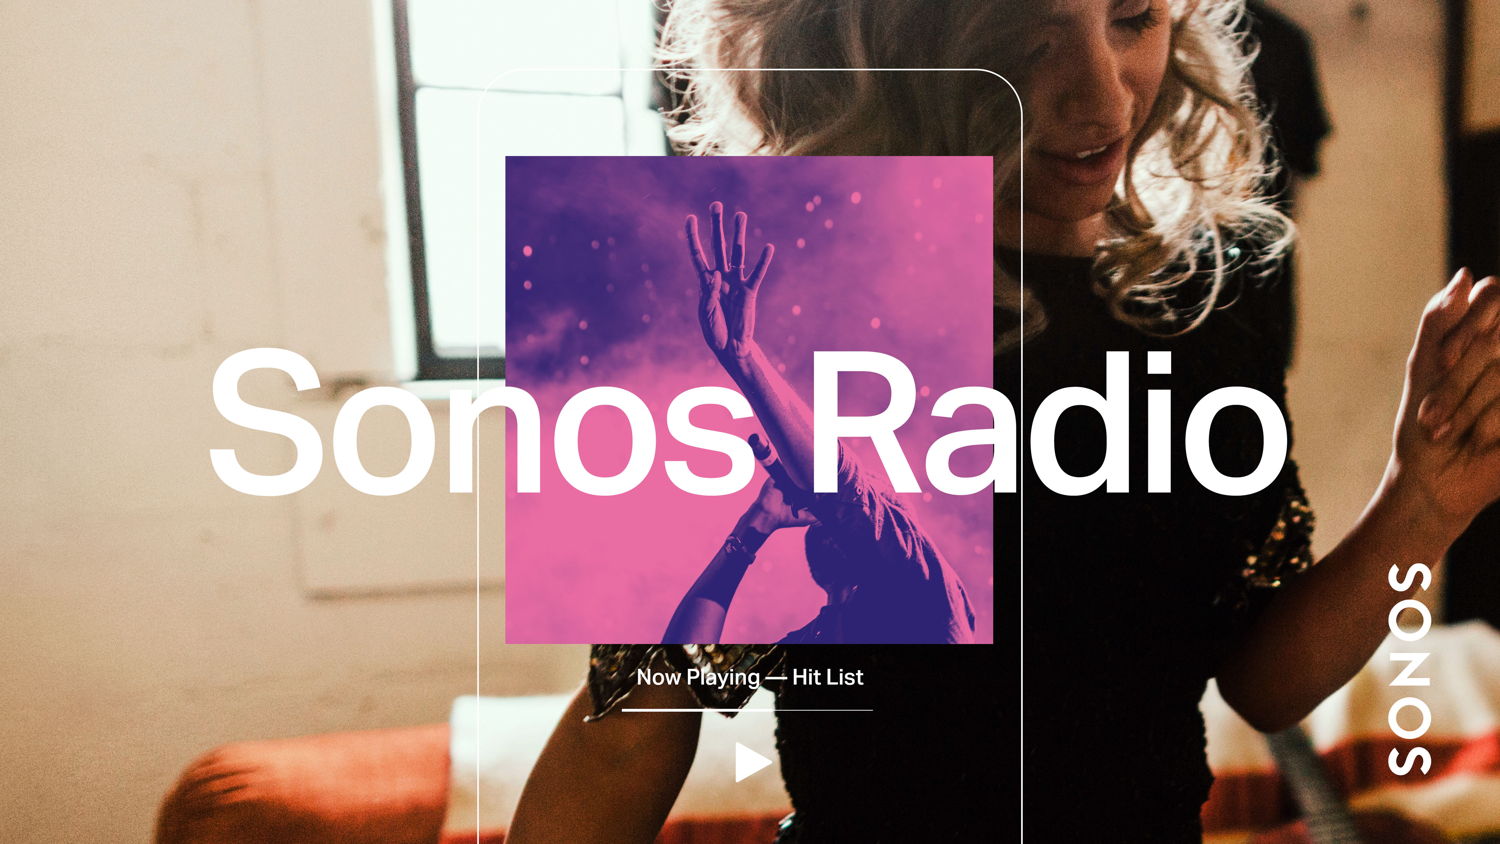 Las Sonos Stations están inspiradas en los géneros favoritos de los usuarios de Sonos, e incluyen más de 30 estaciones curadas para ofrecer una sorprendente mezcla de música seleccionada especialmente por Sonos, donde se disfrutará de estaciones como Concert Hall, Pure Unplugged, Hip Hop Archive, Kids Rock, y más.